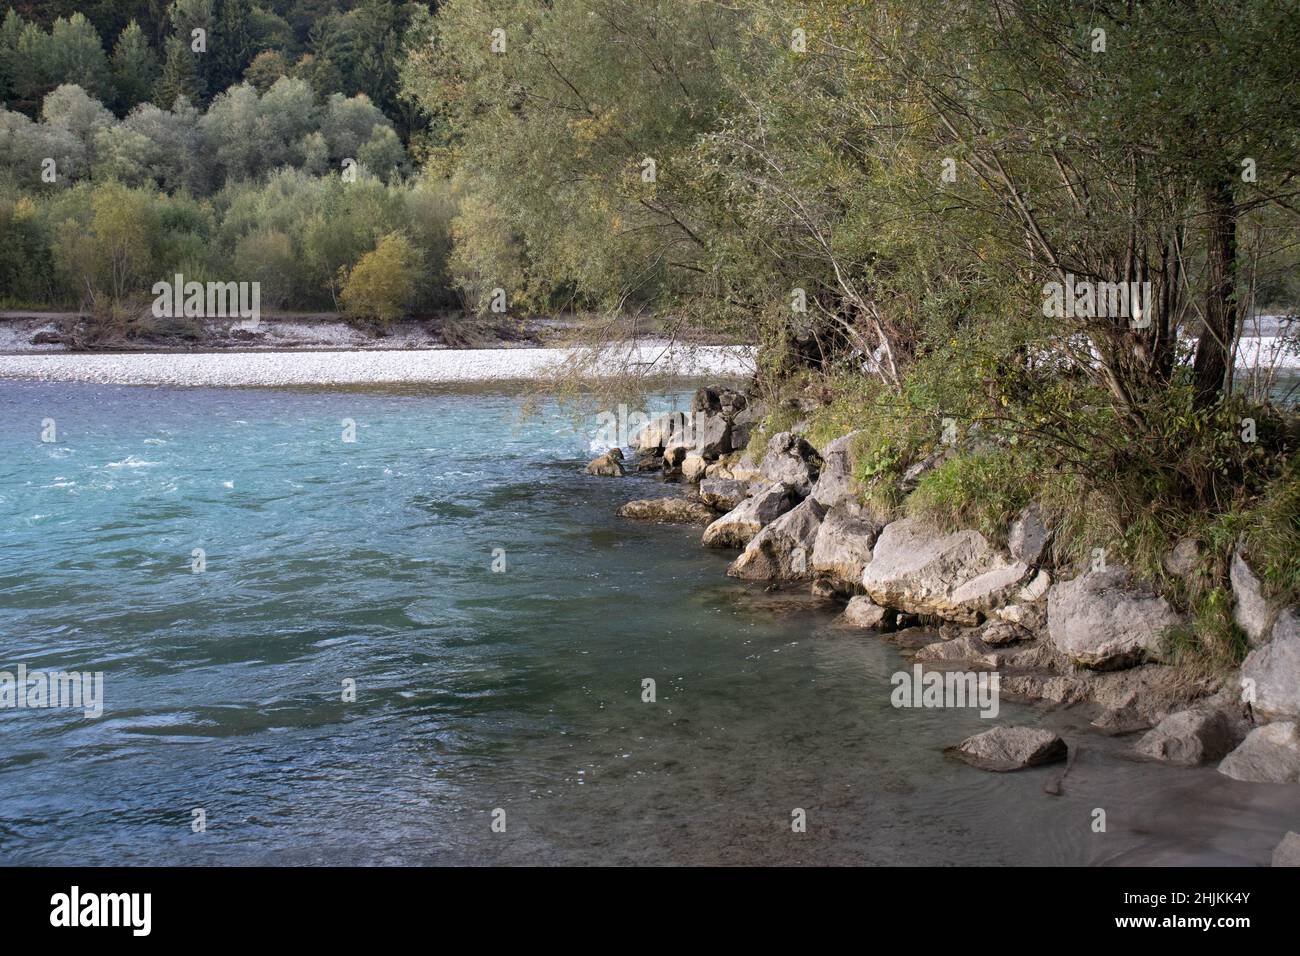 Blick vom Ufer des Lechs auf den Fluss Lech, der blau-grün leuchtet Stock Photo